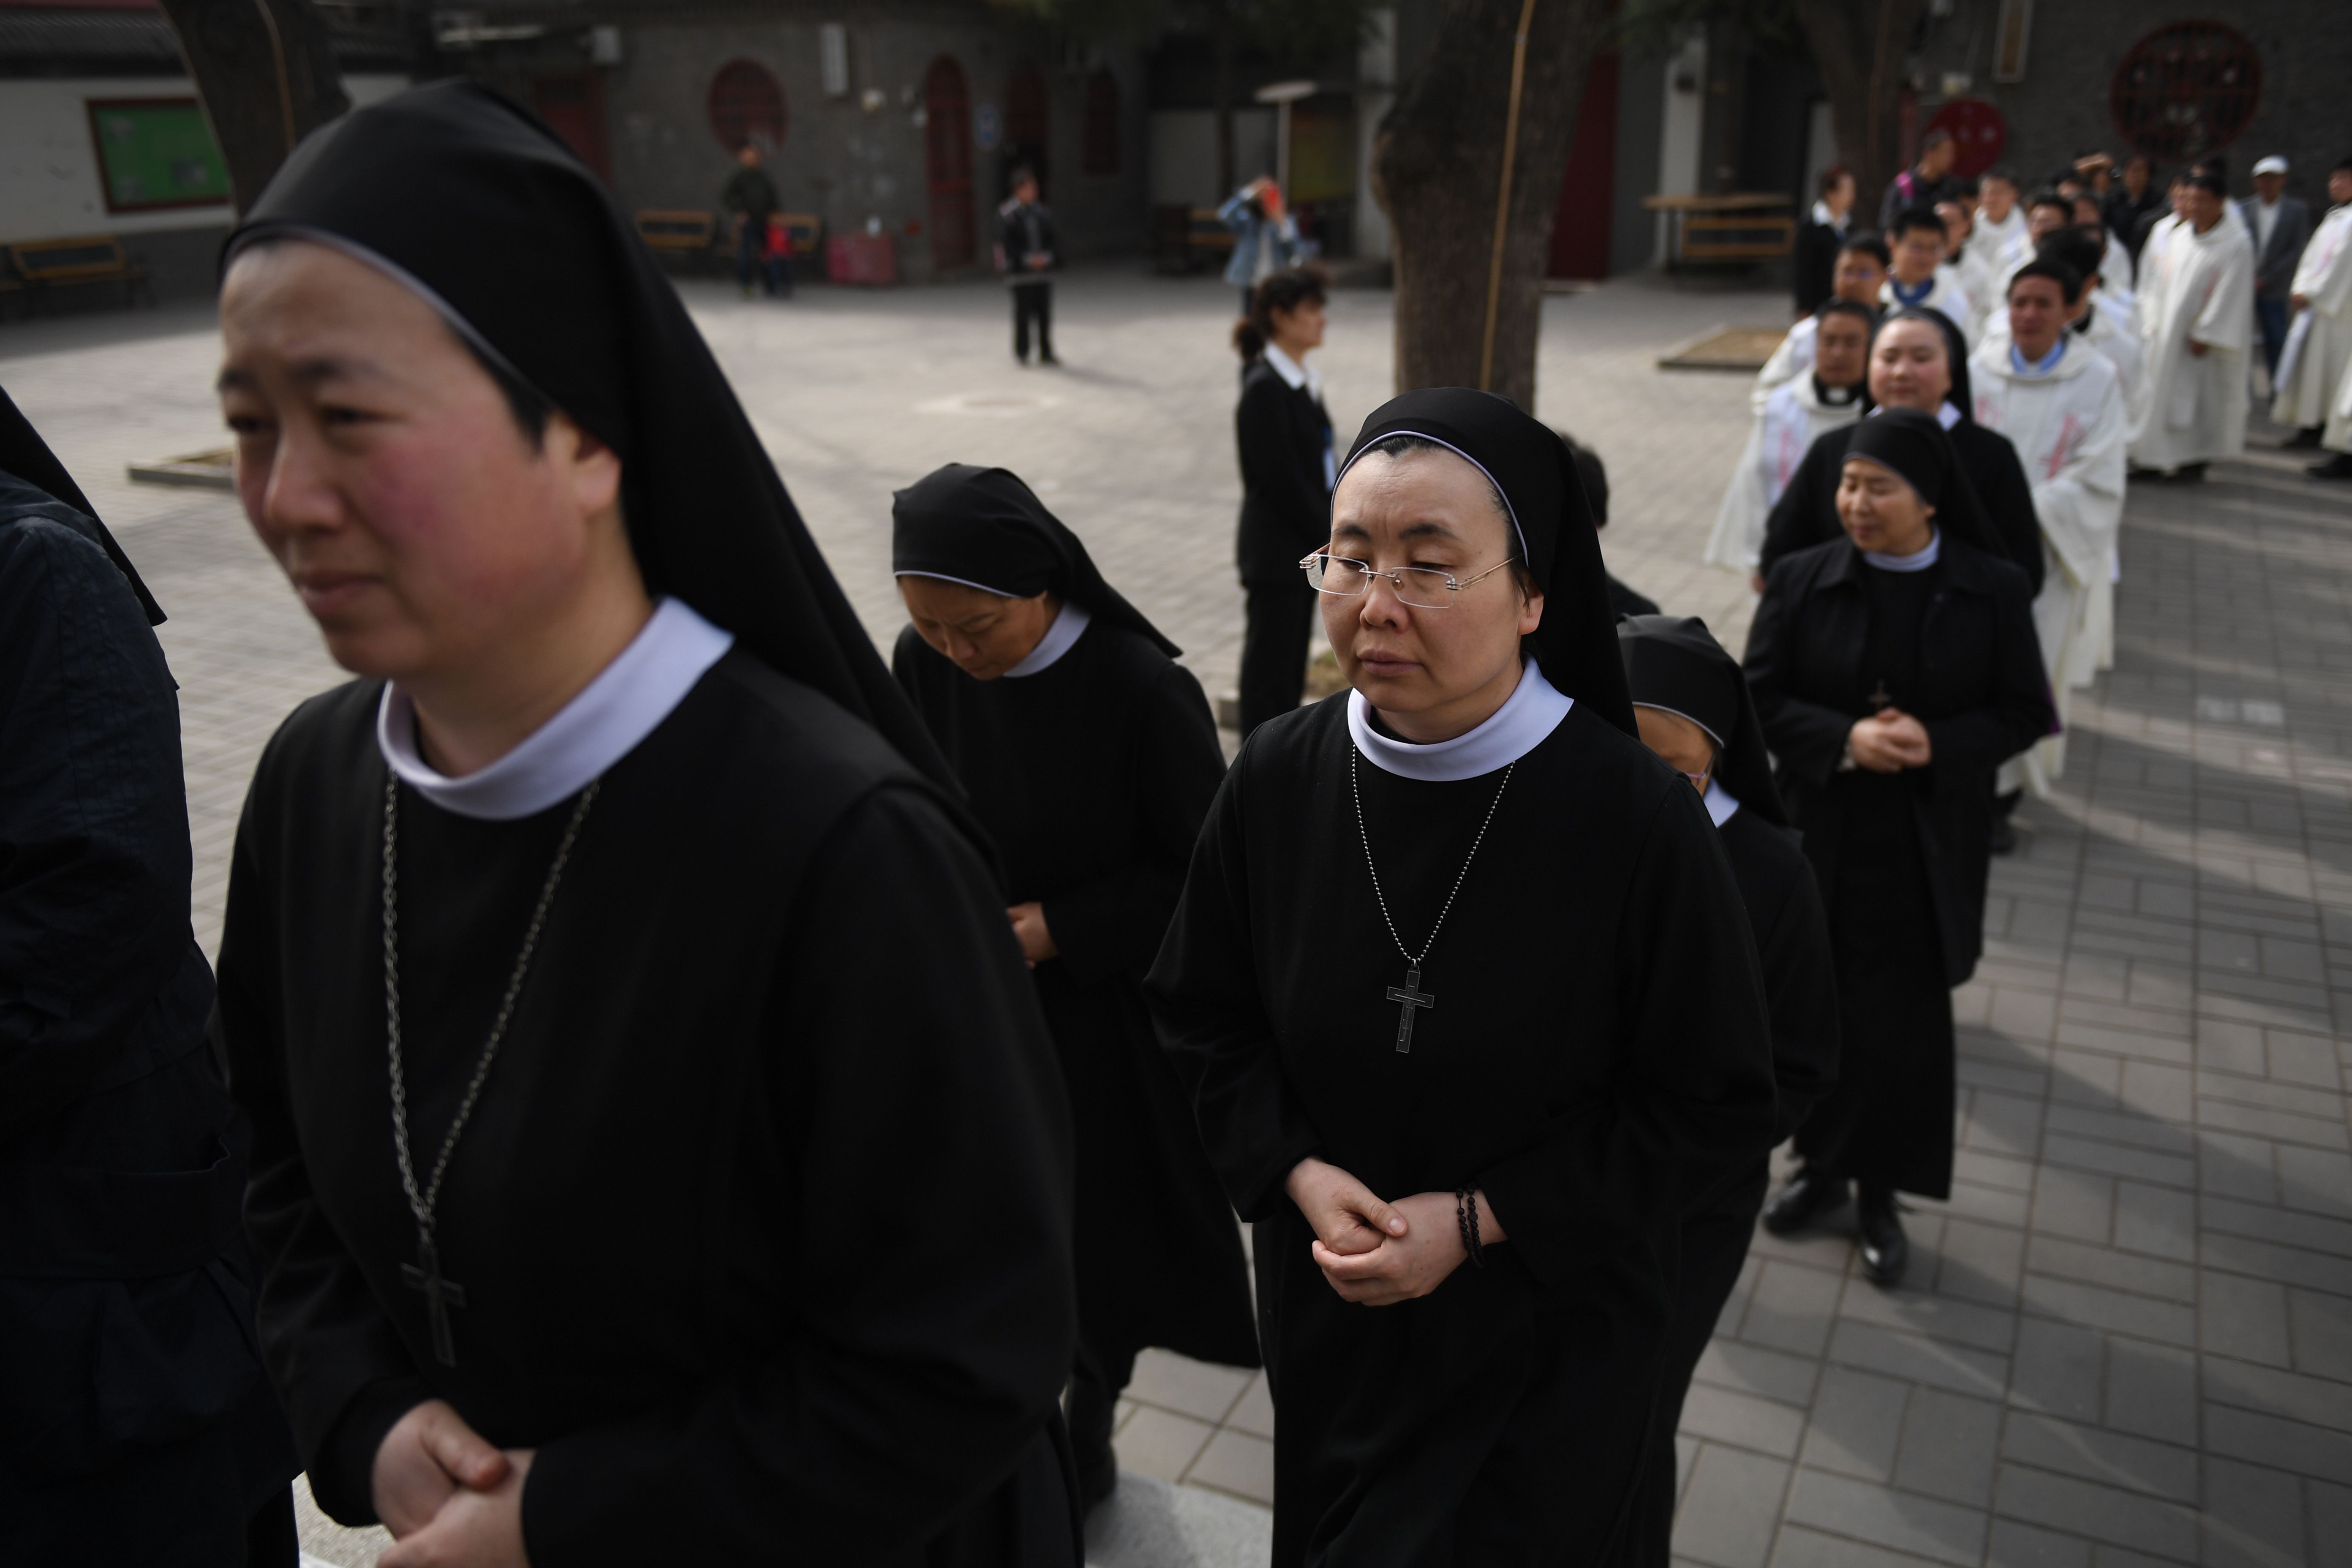 وصول الراهبات الكاثوليك للمشاركة في القداس ببكين